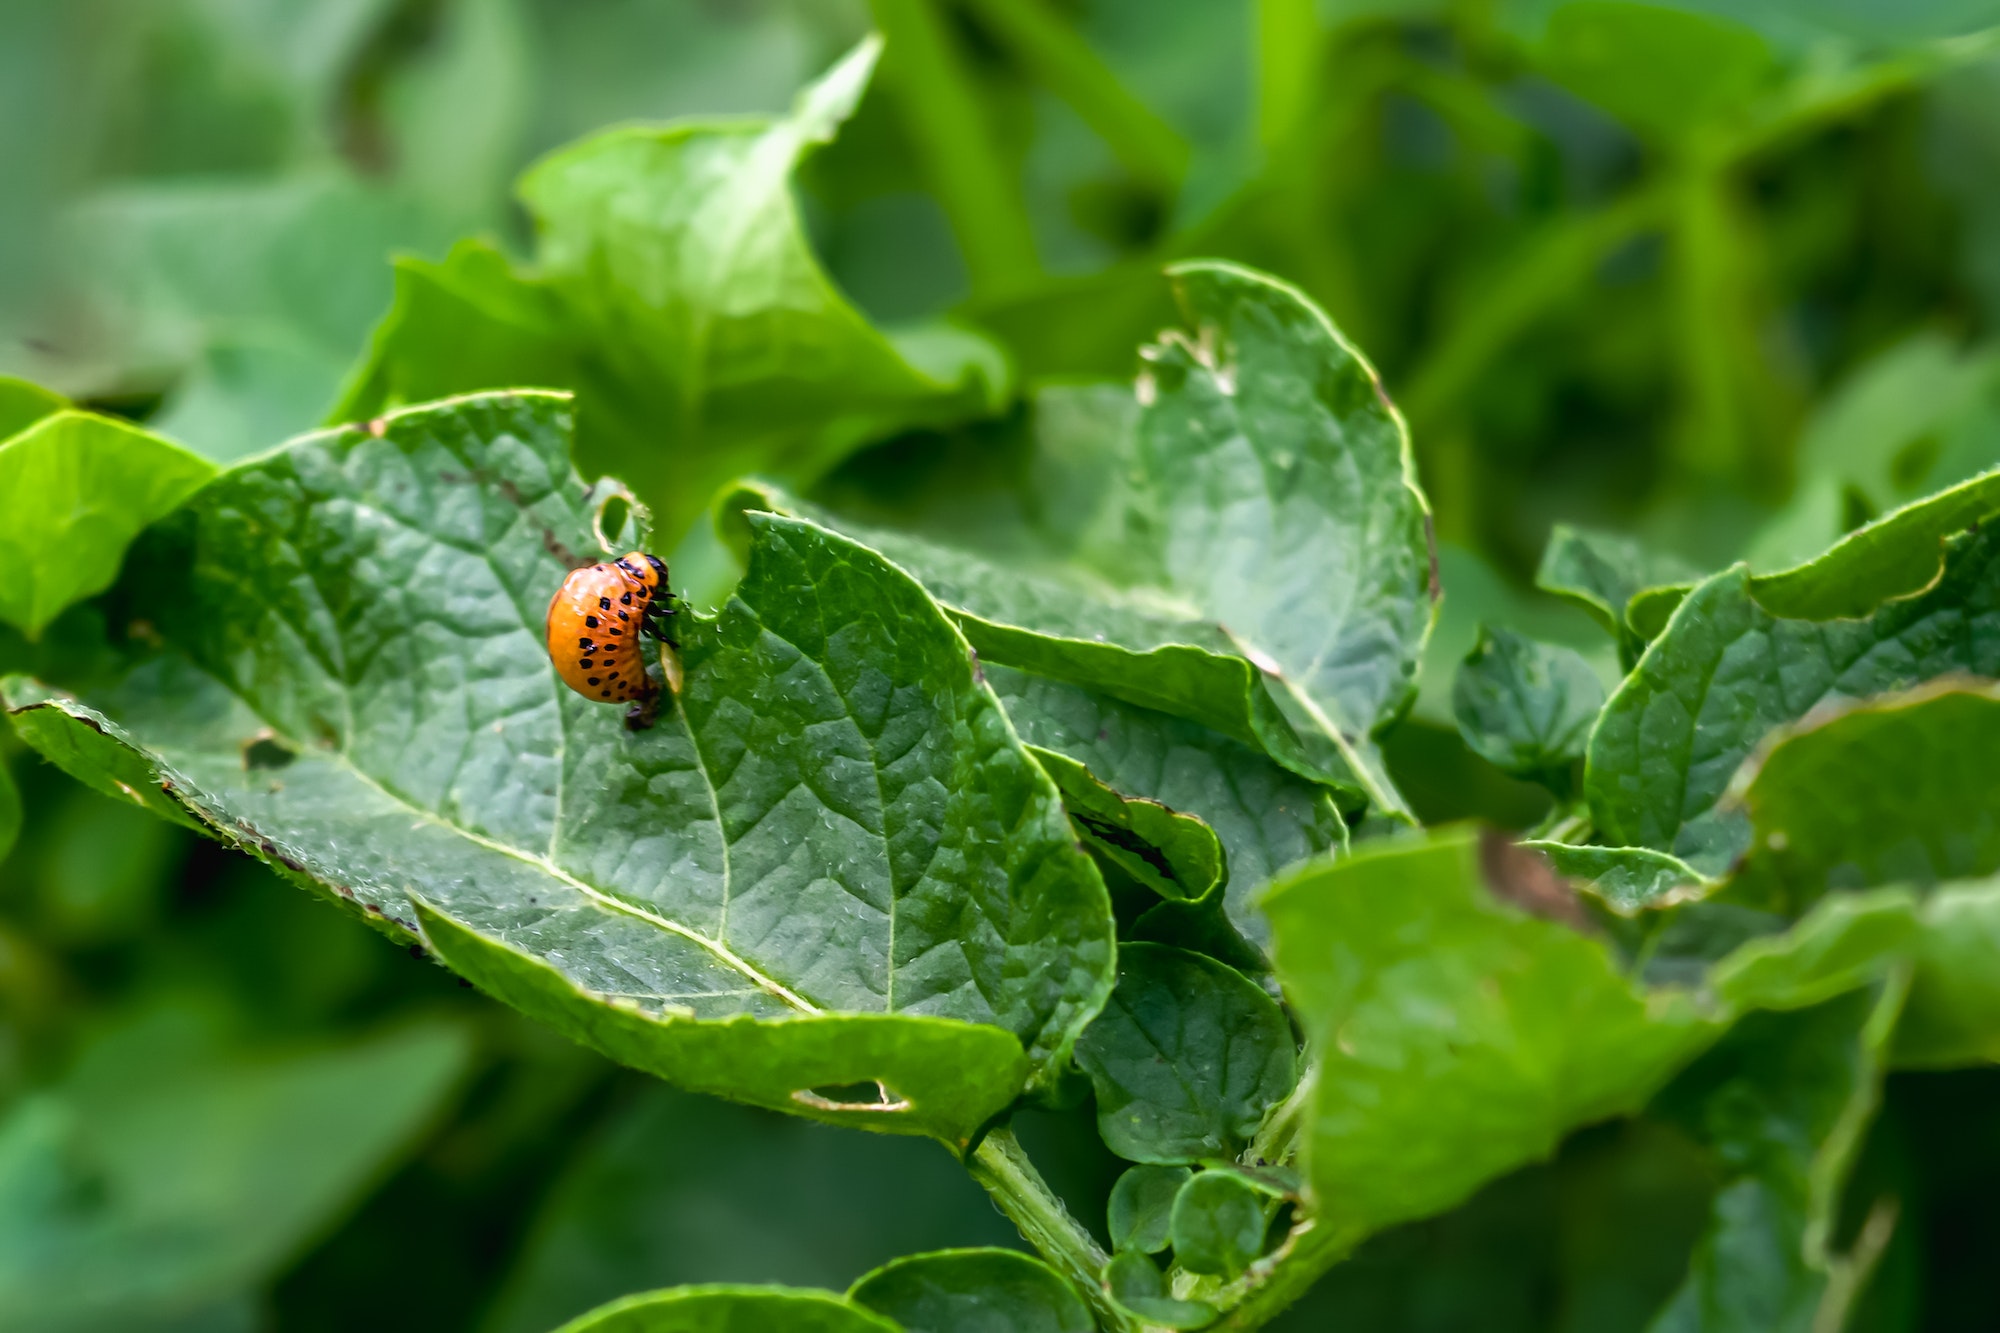 Colorado potato beetle Leptinotarsa decemlineata potato pest on green foliage. Pest control. Gardeni